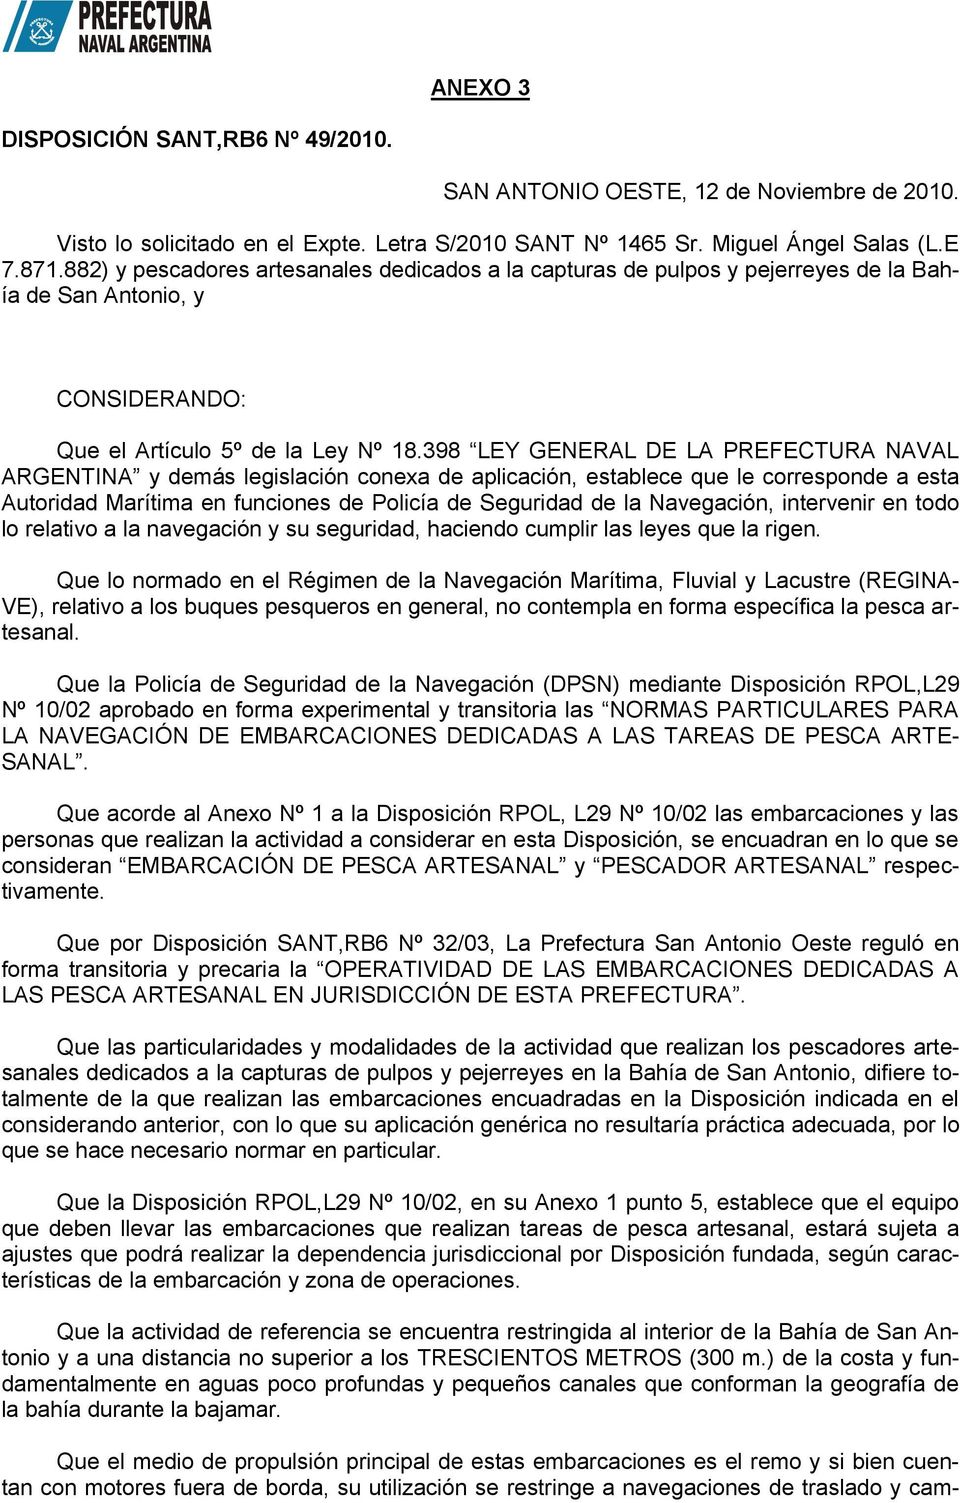 398 LEY GENERAL DE LA PREFECTURA NAVAL ARGENTINA y demás legislación conexa de aplicación, establece que le corresponde a esta Autoridad Marítima en funciones de Policía de Seguridad de la